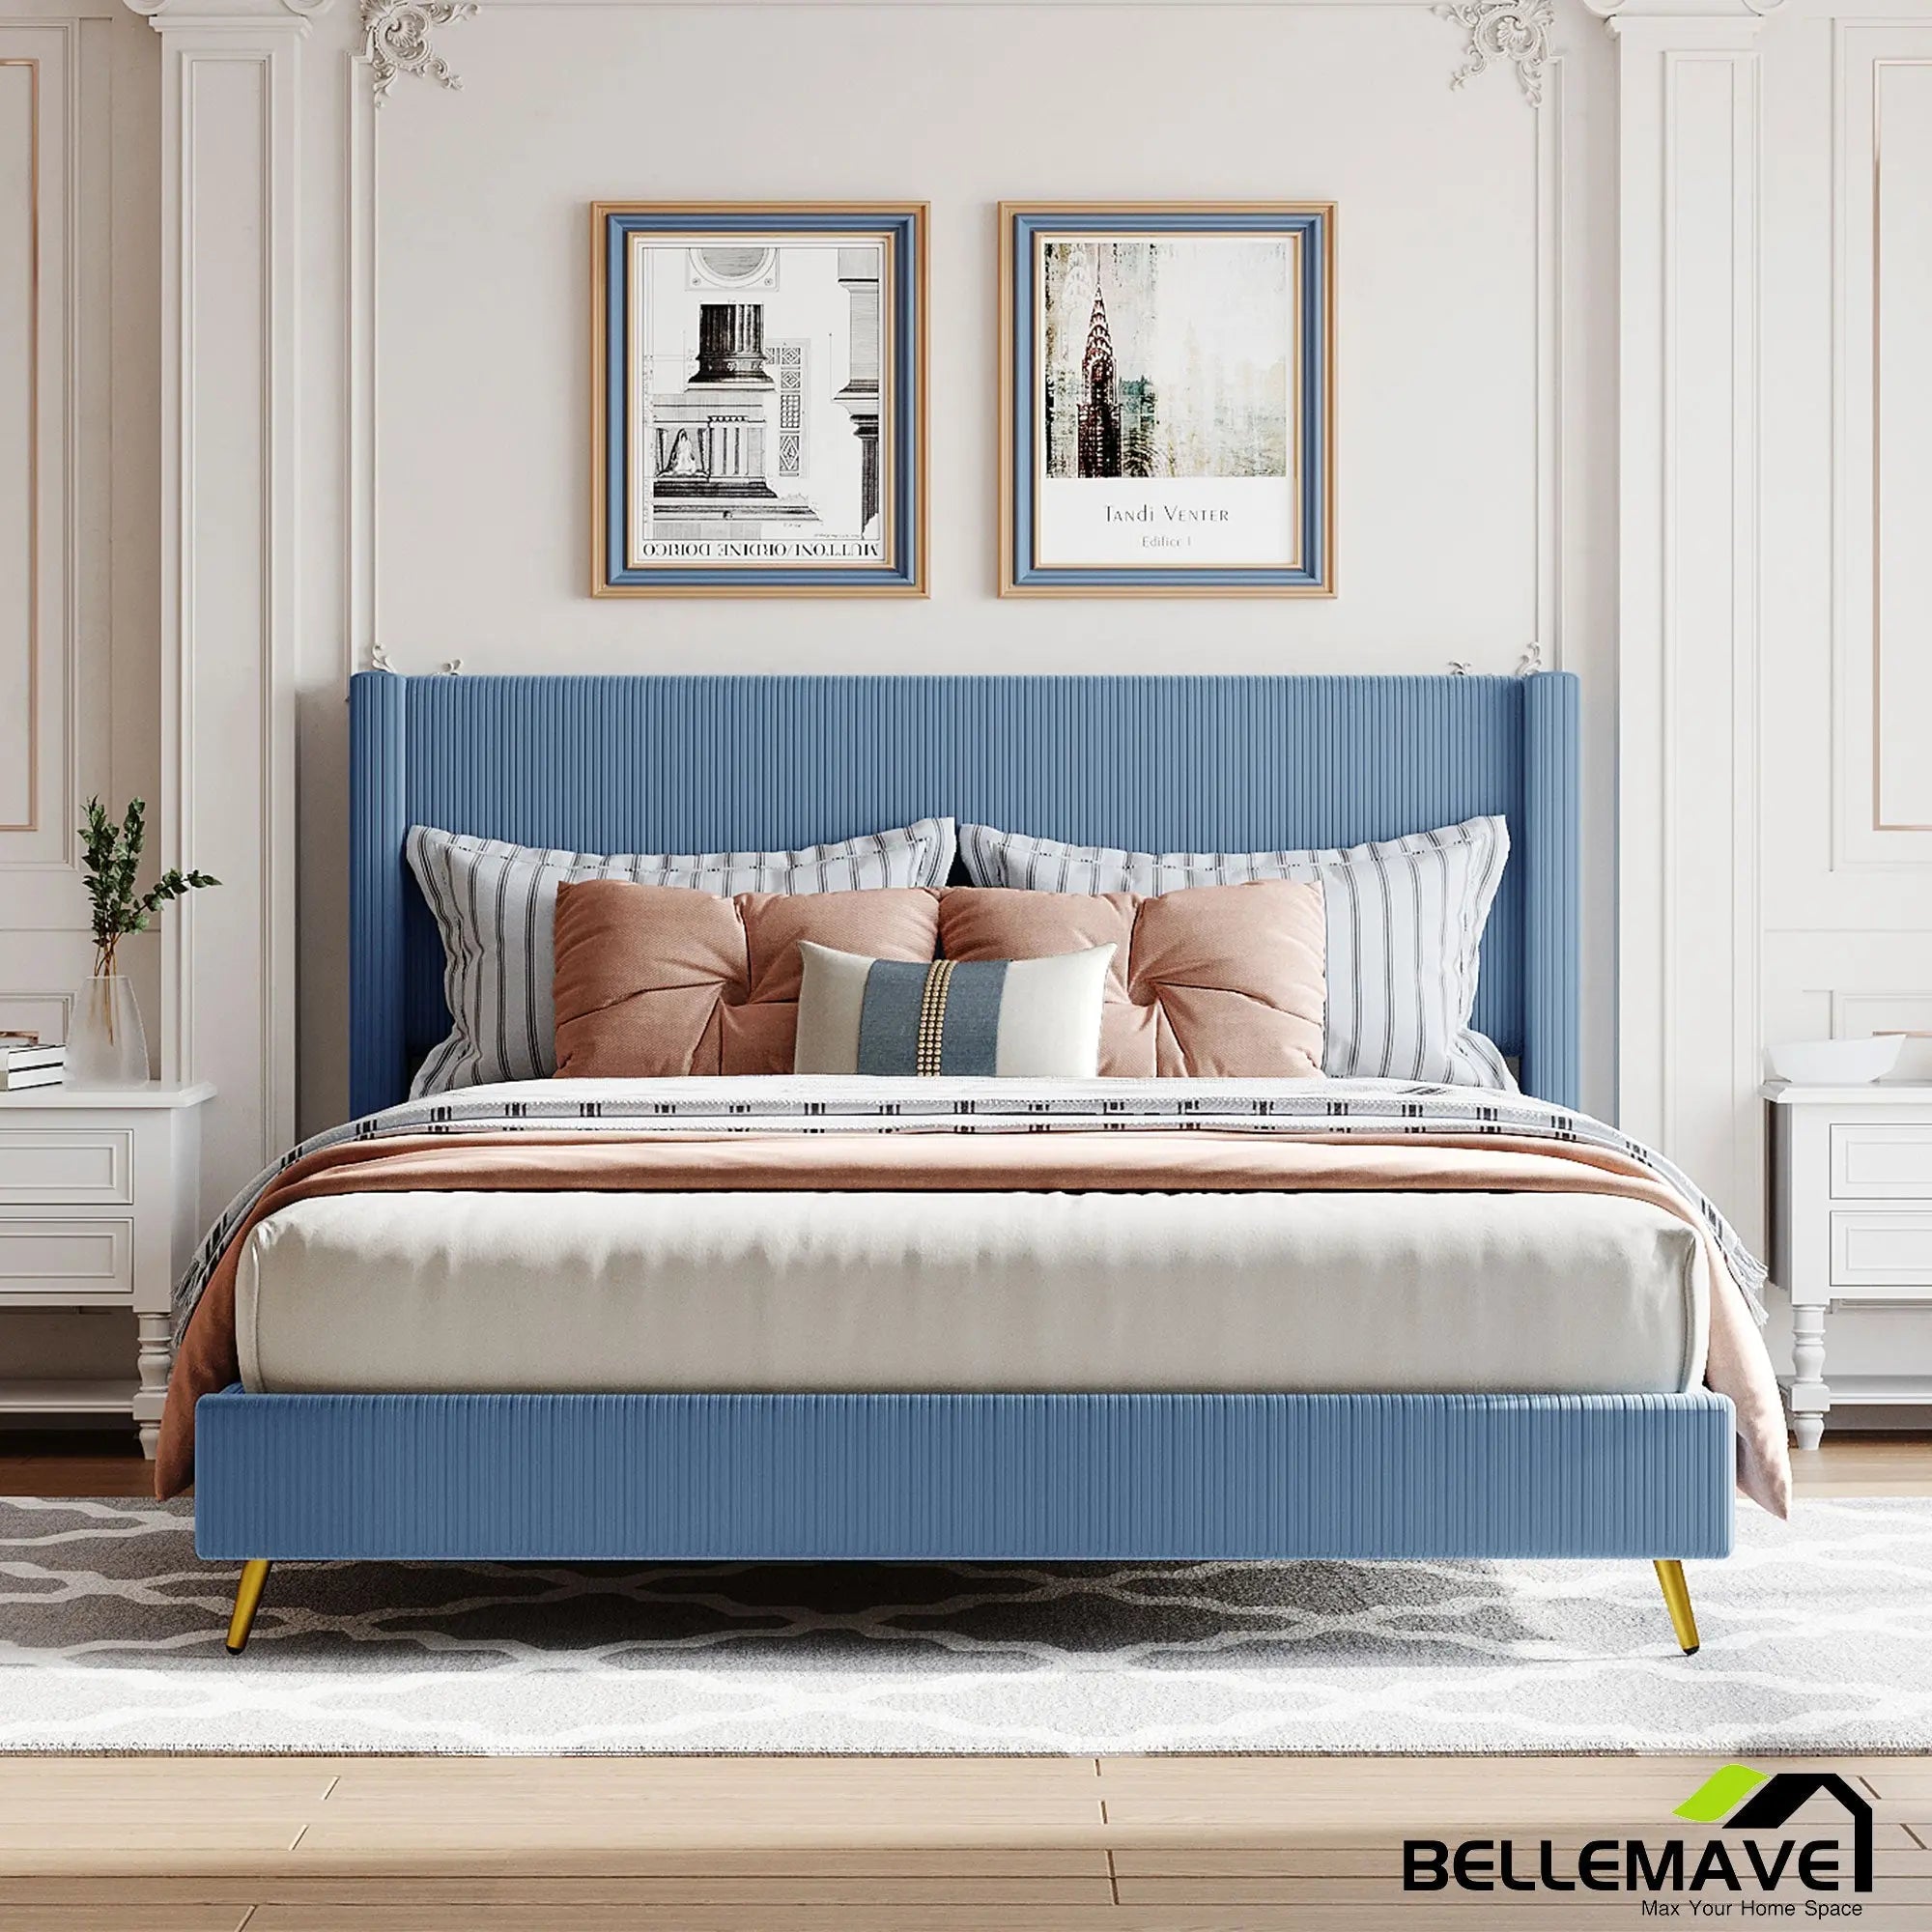 Bellemave Queen Size Corduroy Platform Bed with Metal Legs - Bellemave